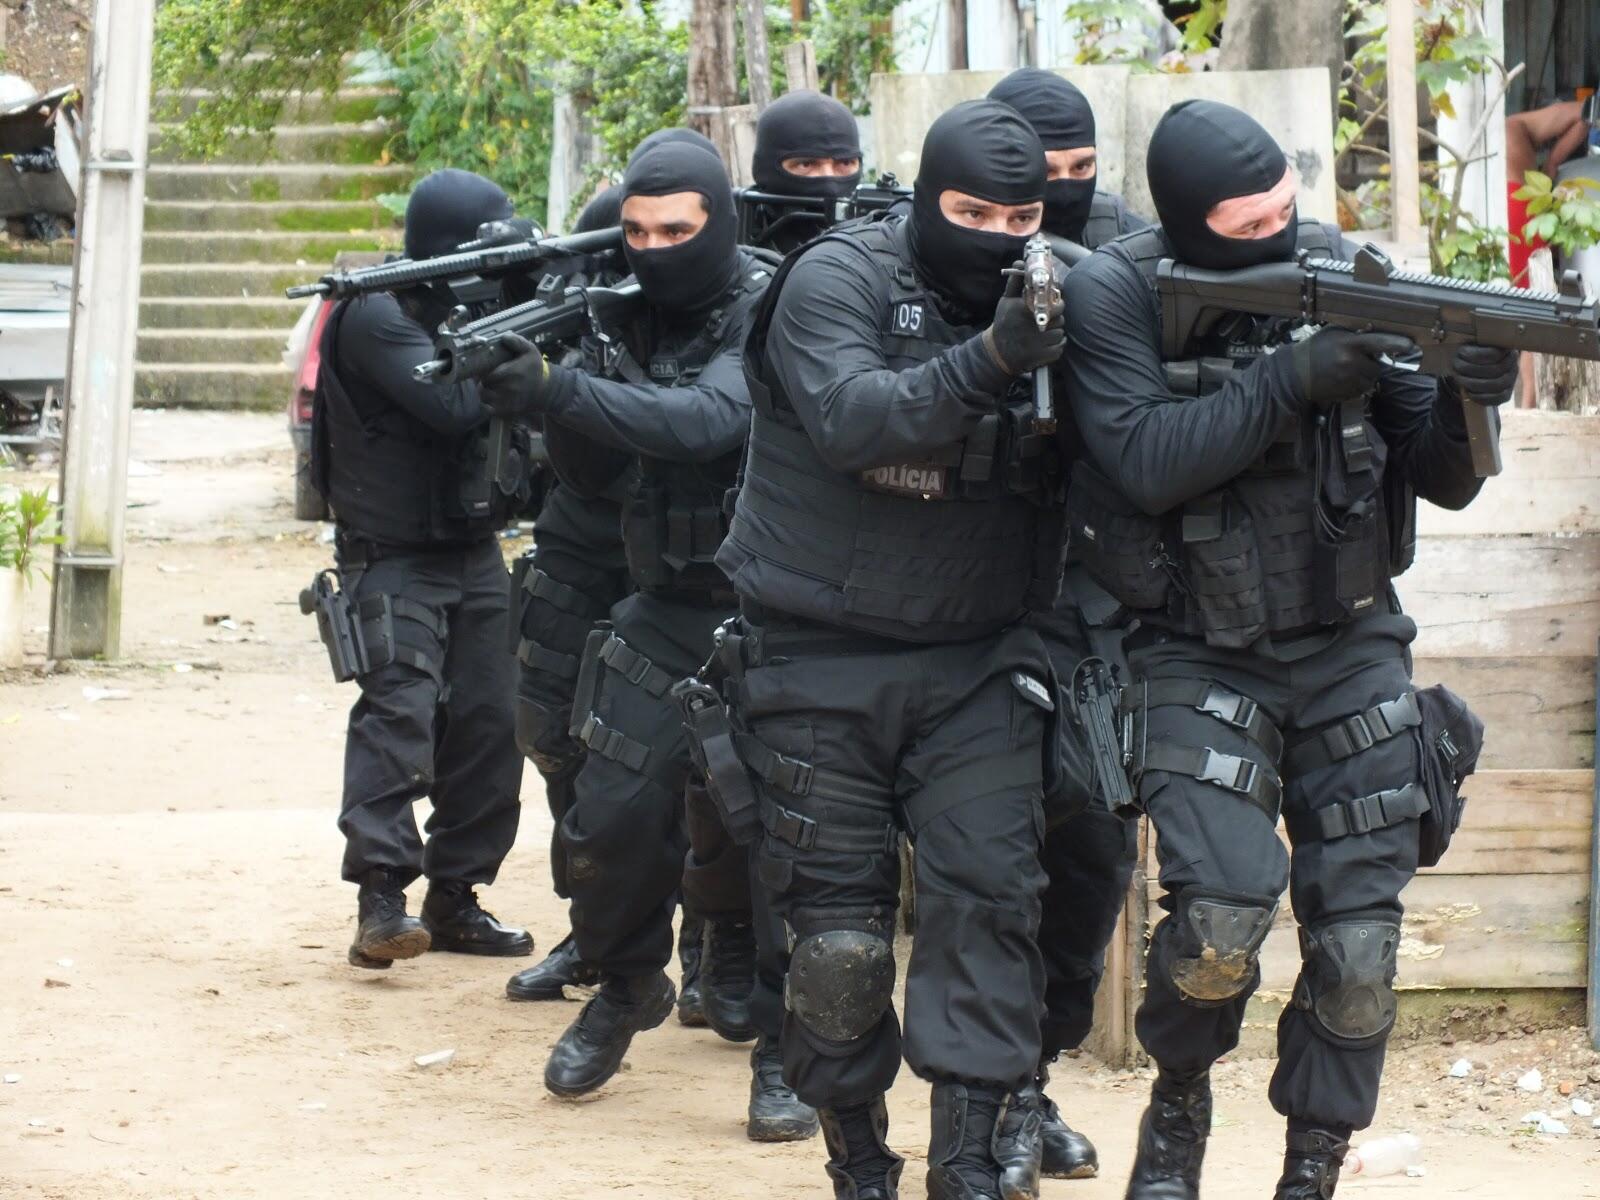 Polícia Civil do Espírito Santo abre concurso com 173 vagas e salários de R$ 5.103,84